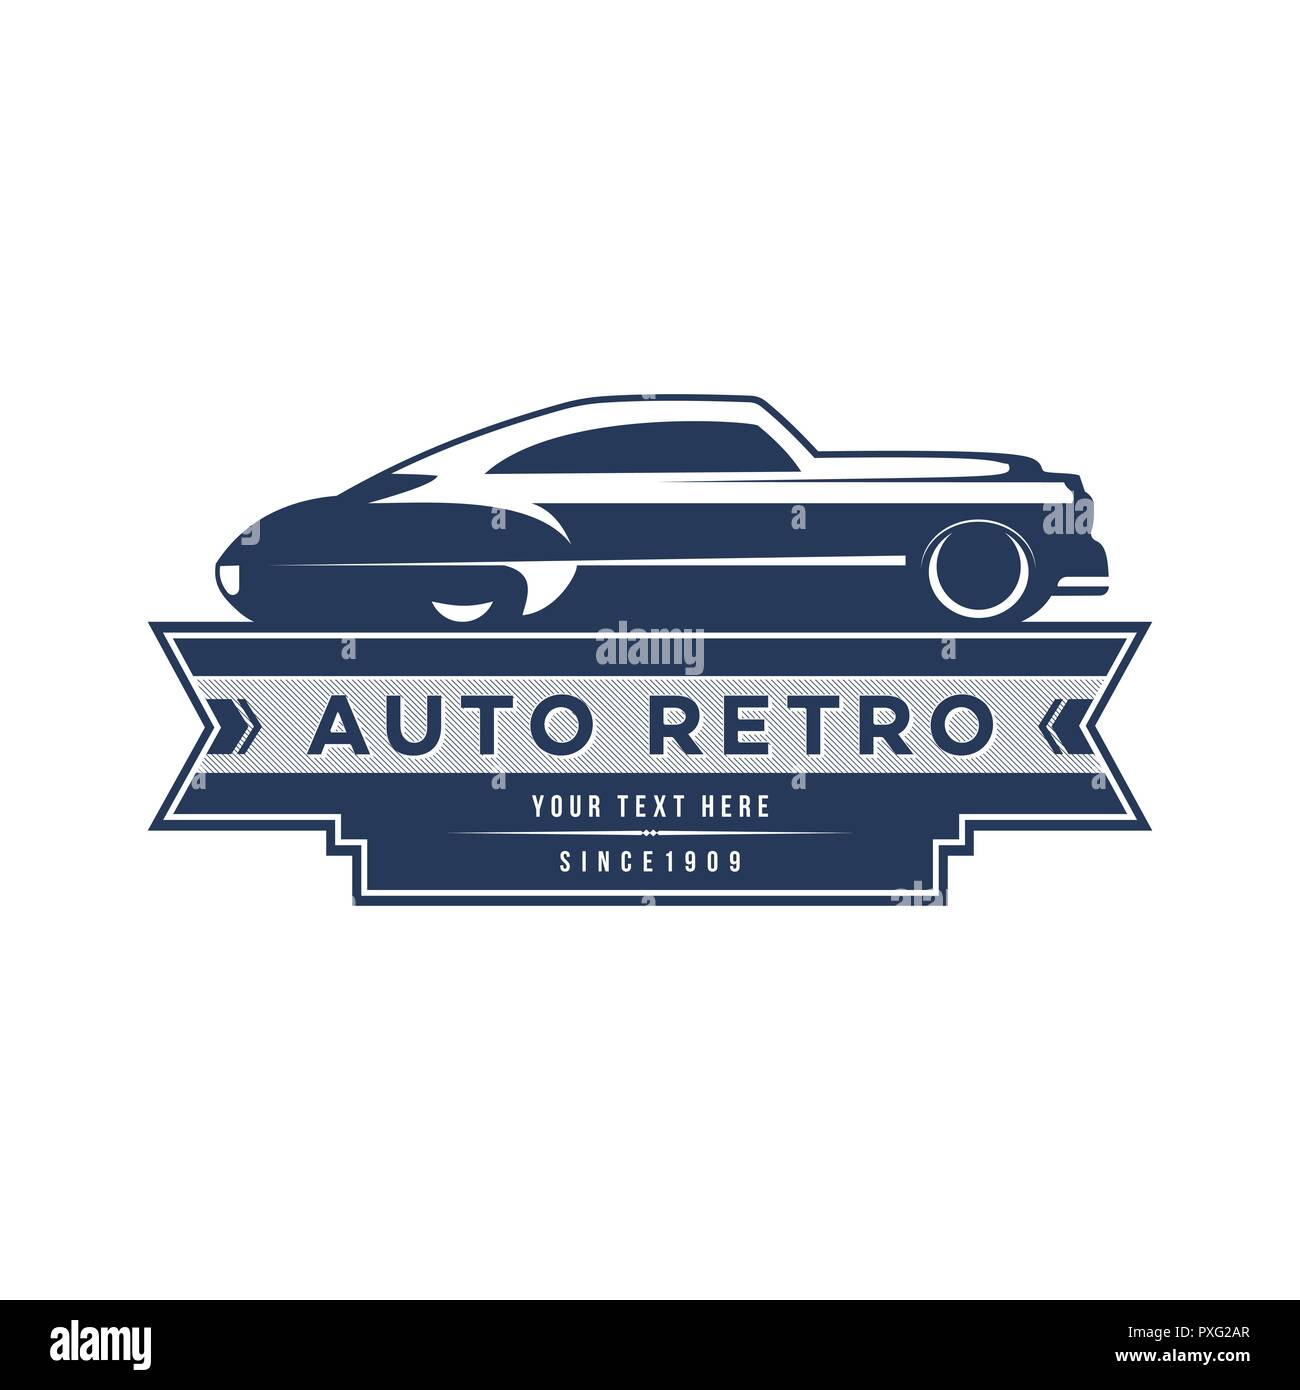 Retro Car Logo Template Design, vintage logo style. Stock Vector